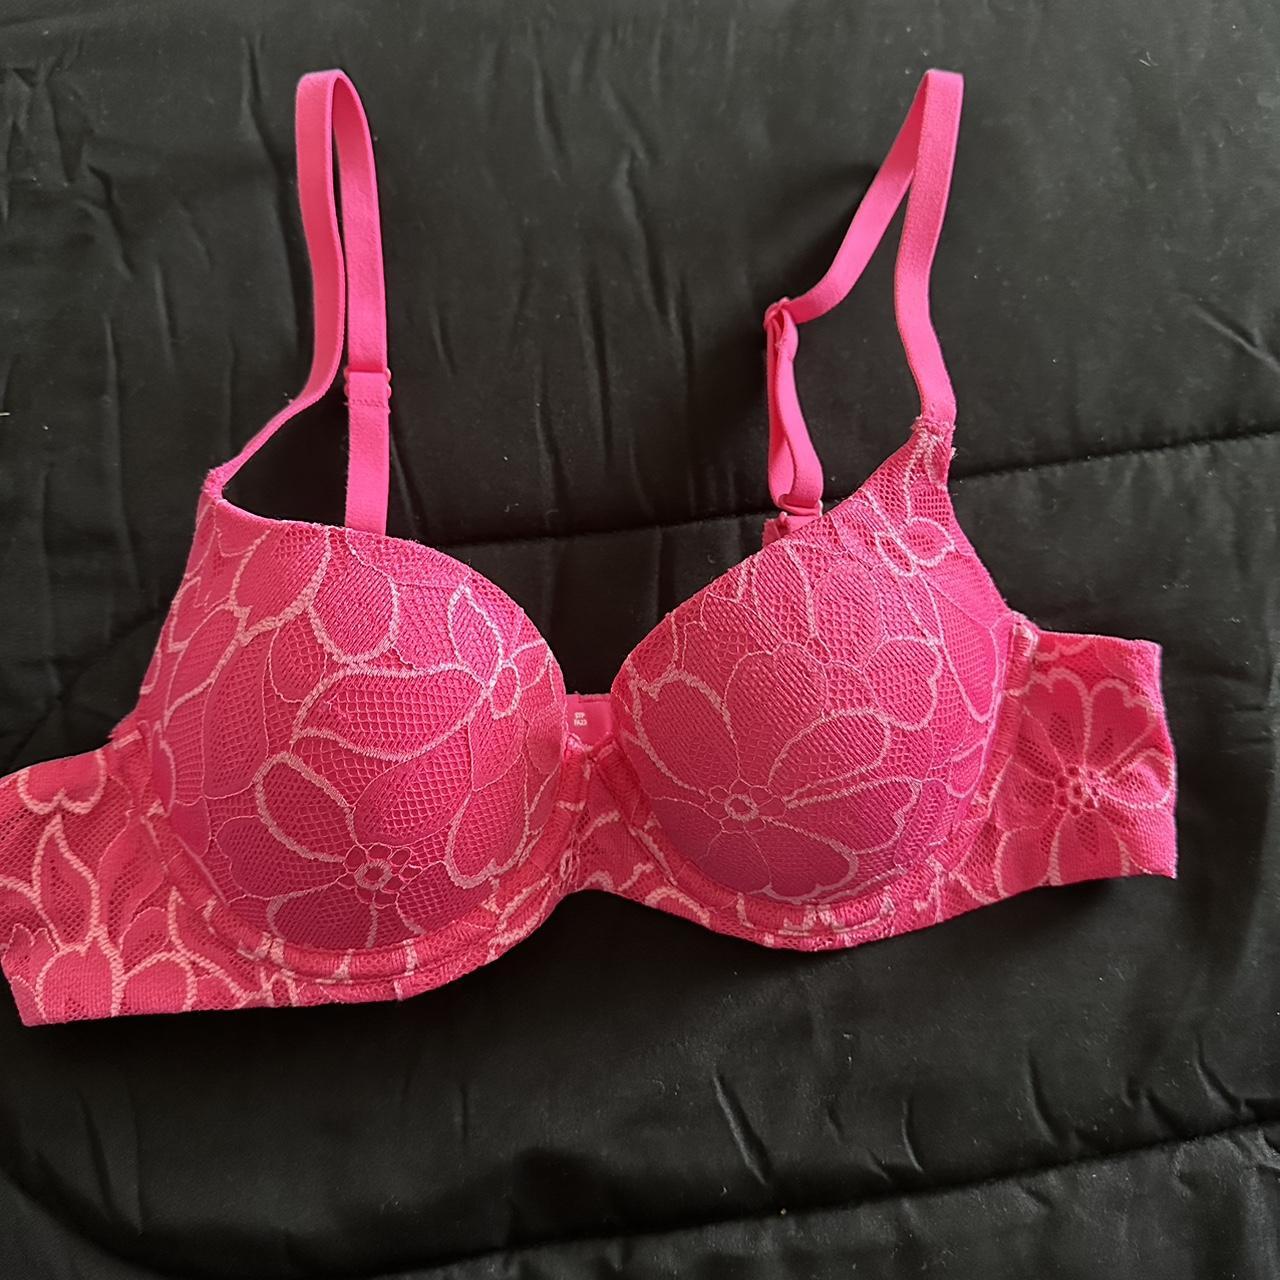 NWOT Floral pink bra slight push up size 34A never - Depop